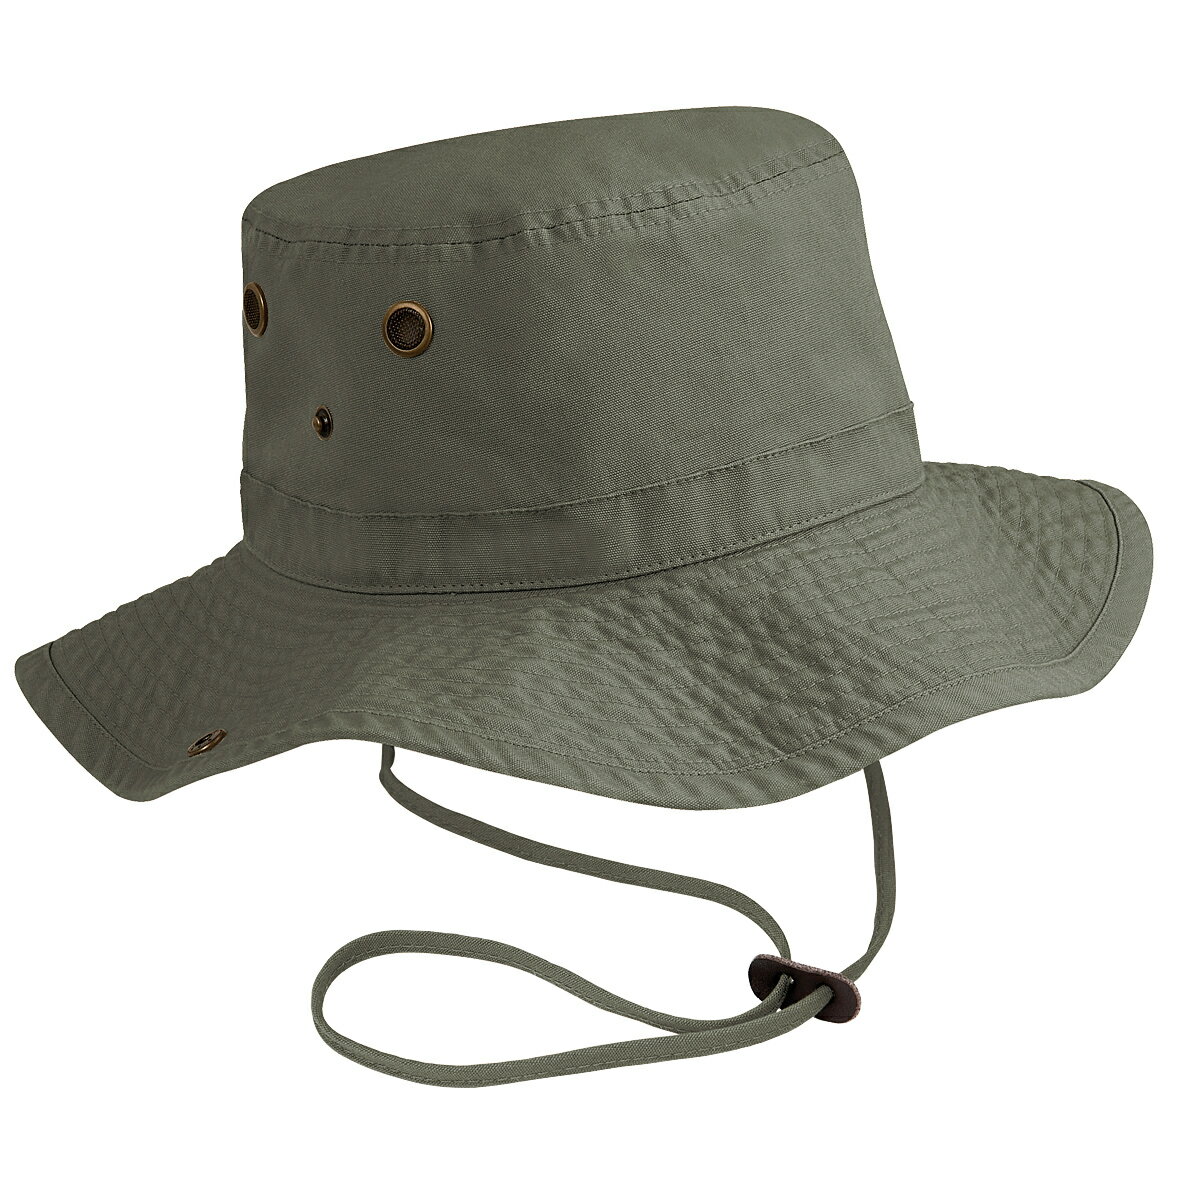 (ビーチフィールド) Beechfield ユニセックス アウトバック UPF50 サファリハット アウトドアハット バケットハット 帽子 夏 